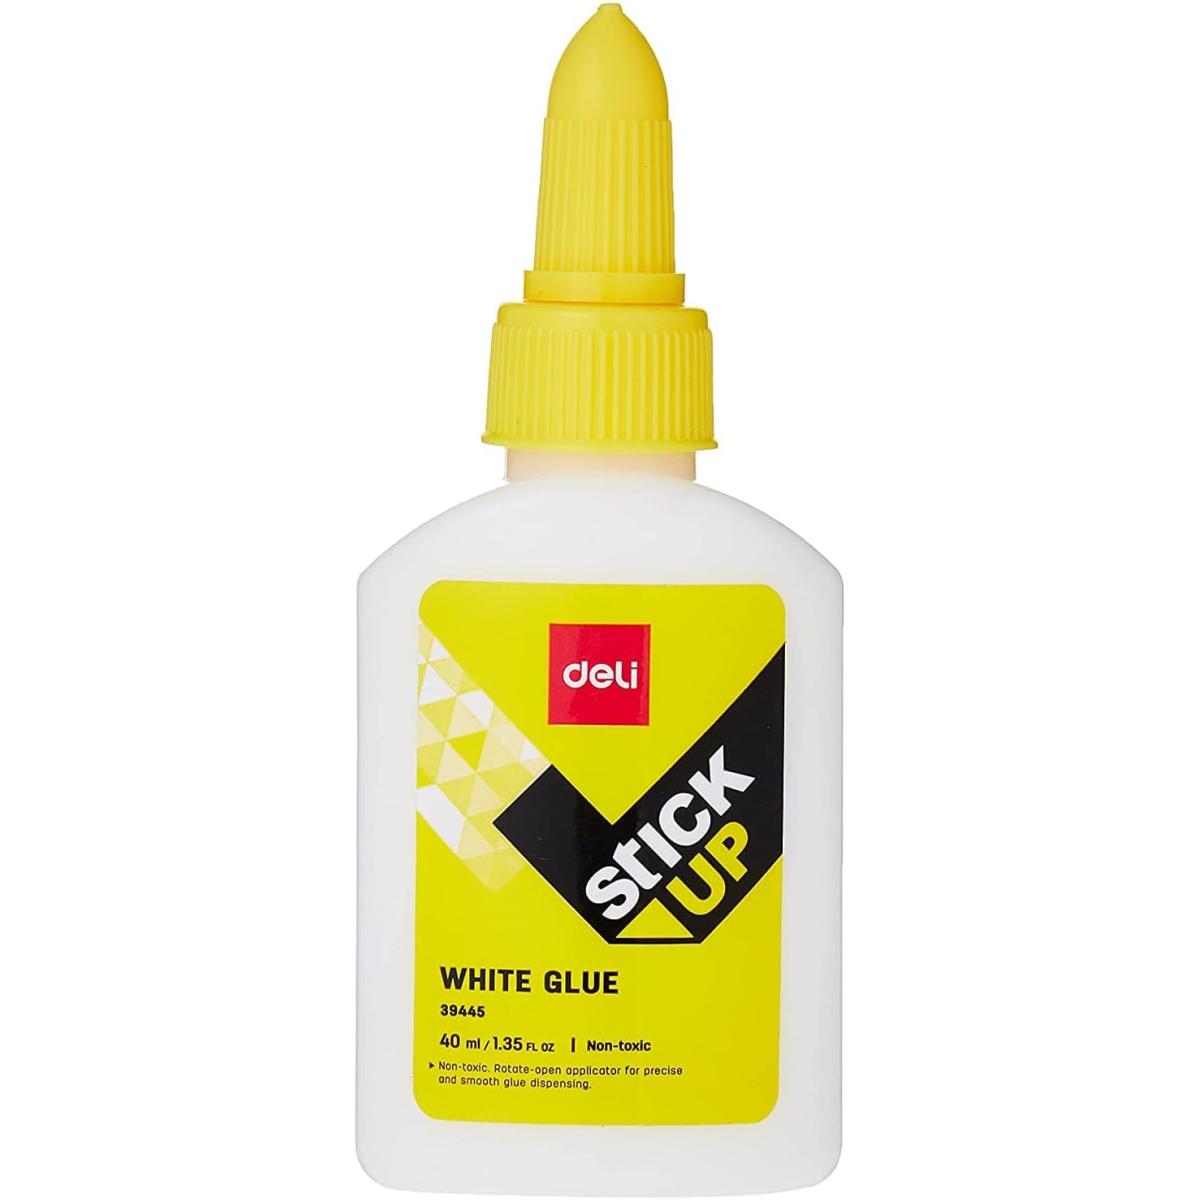 Deli White Glue 40 ml